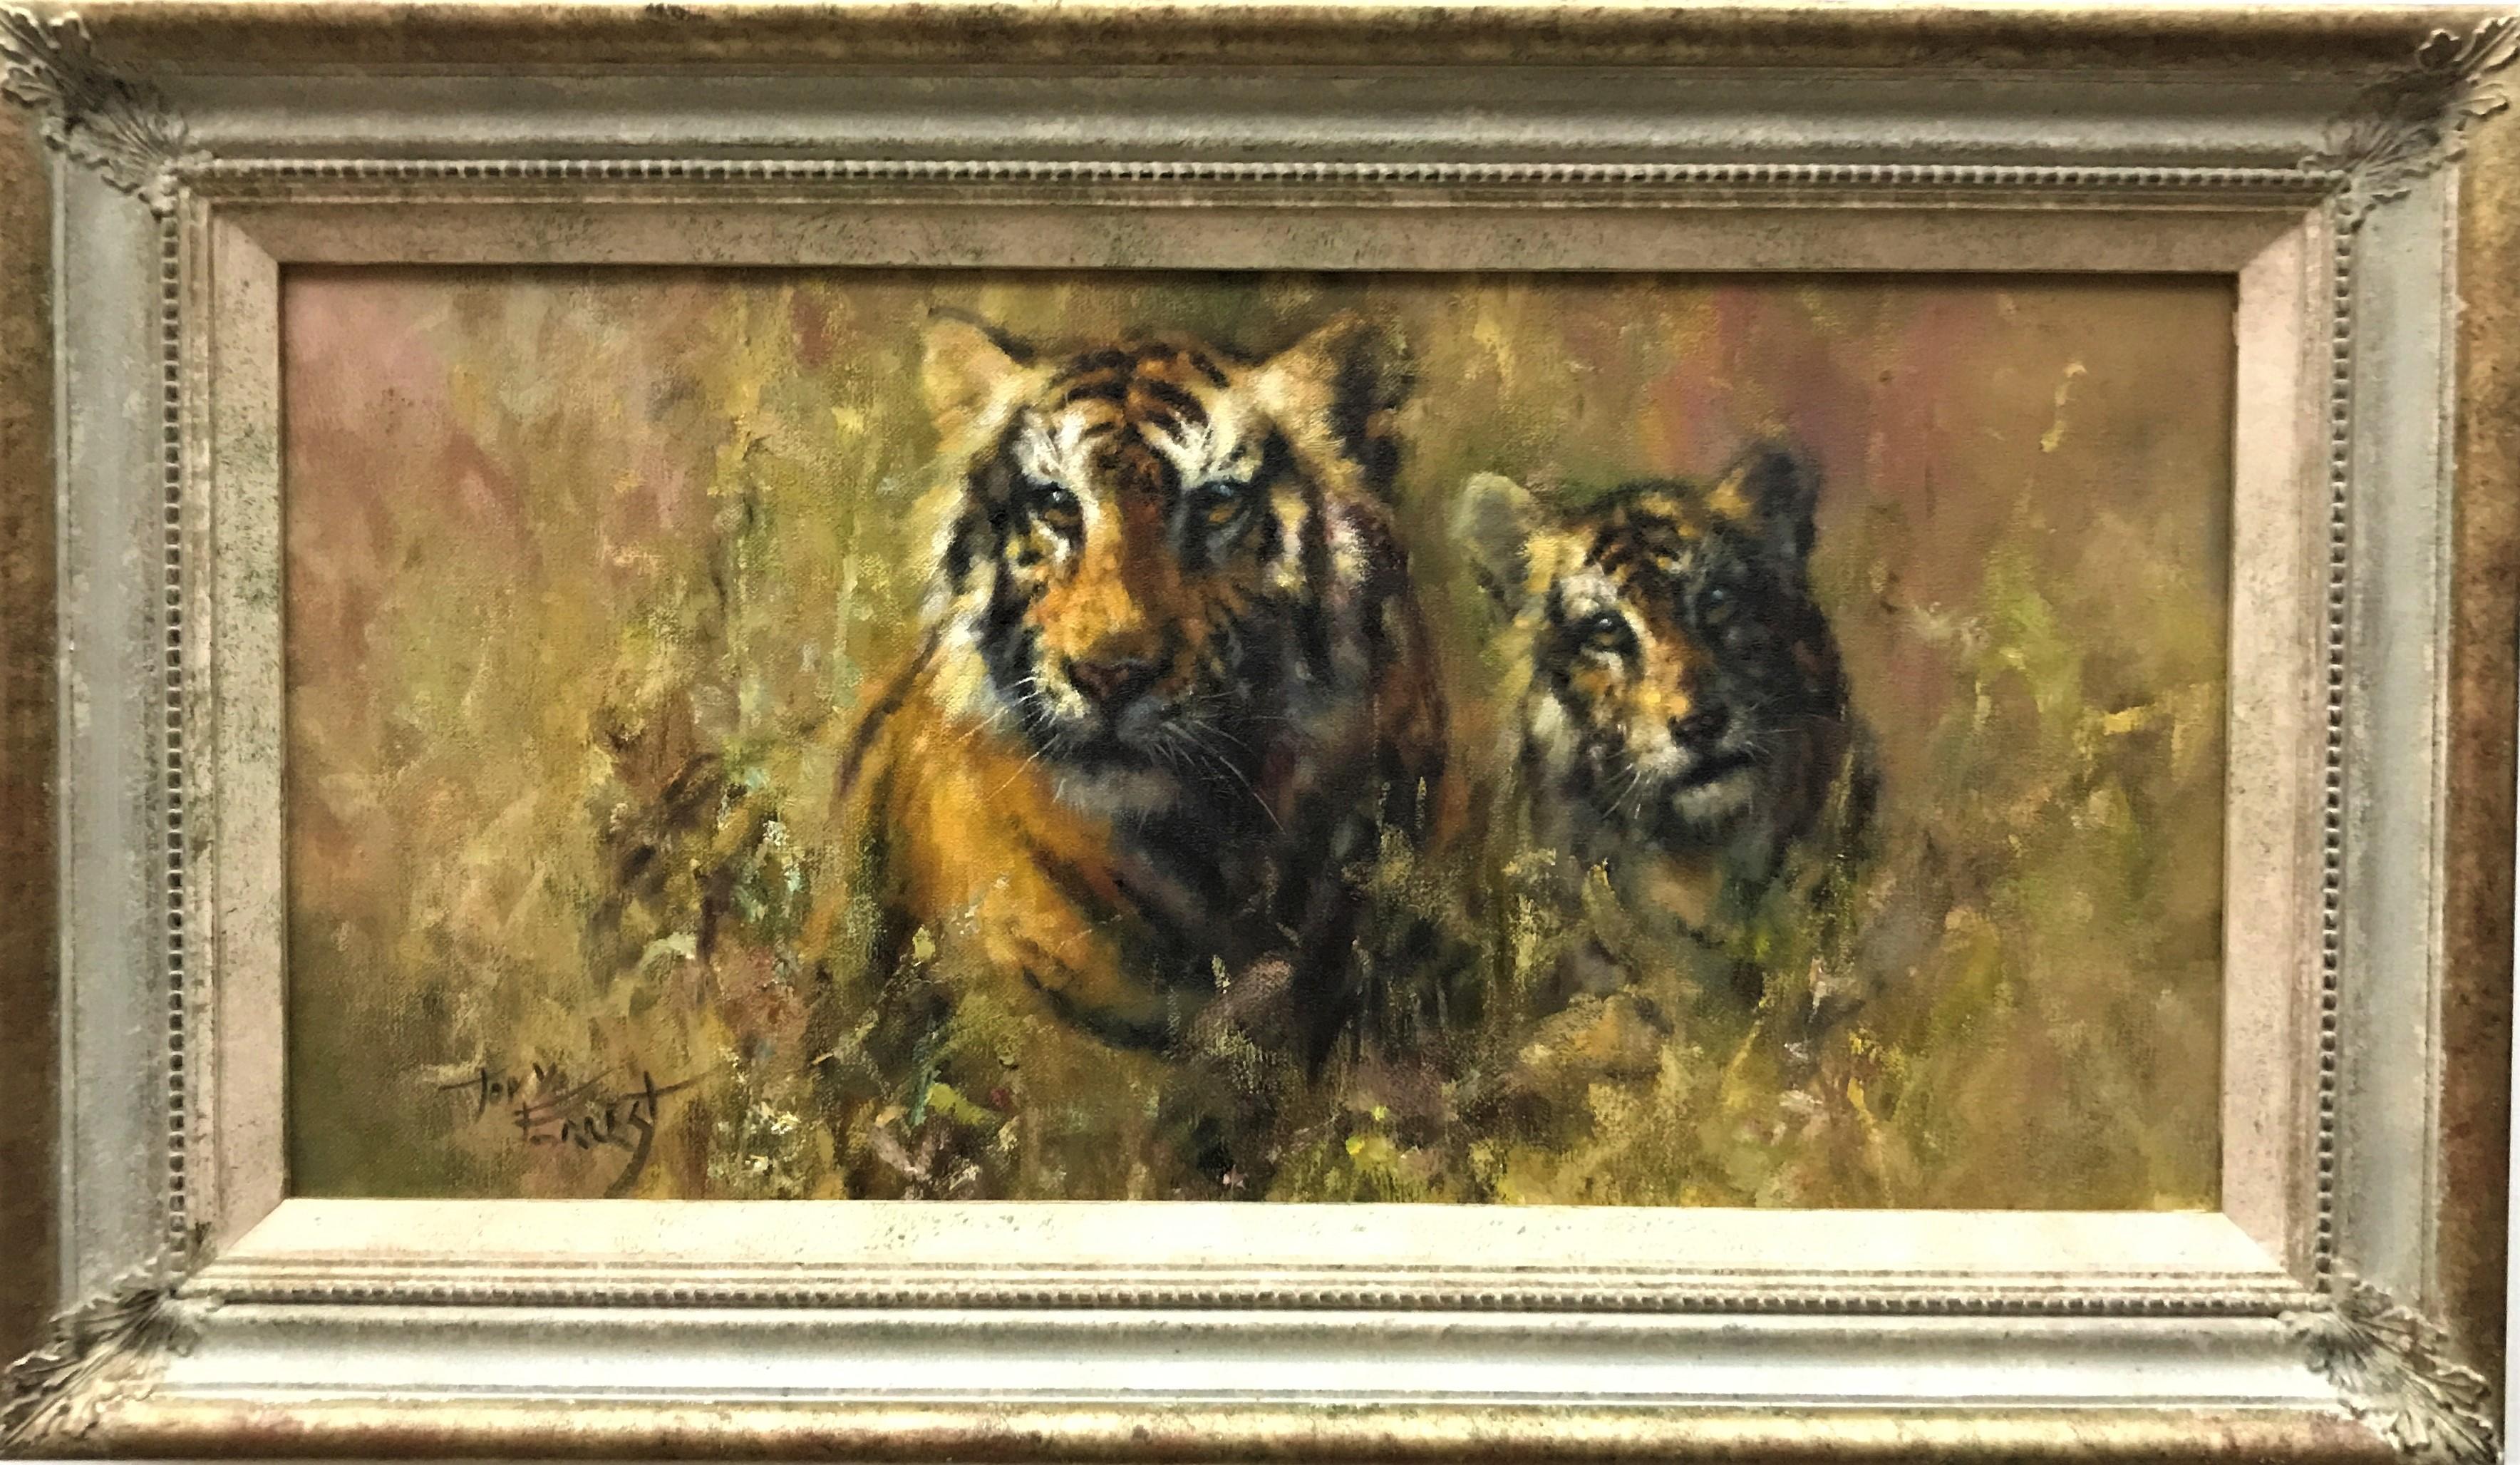 Tigre et cube dans l'herbe, huile sur toile, peintre britannique réaliste du 20e siècle - Painting de Tony Forrest